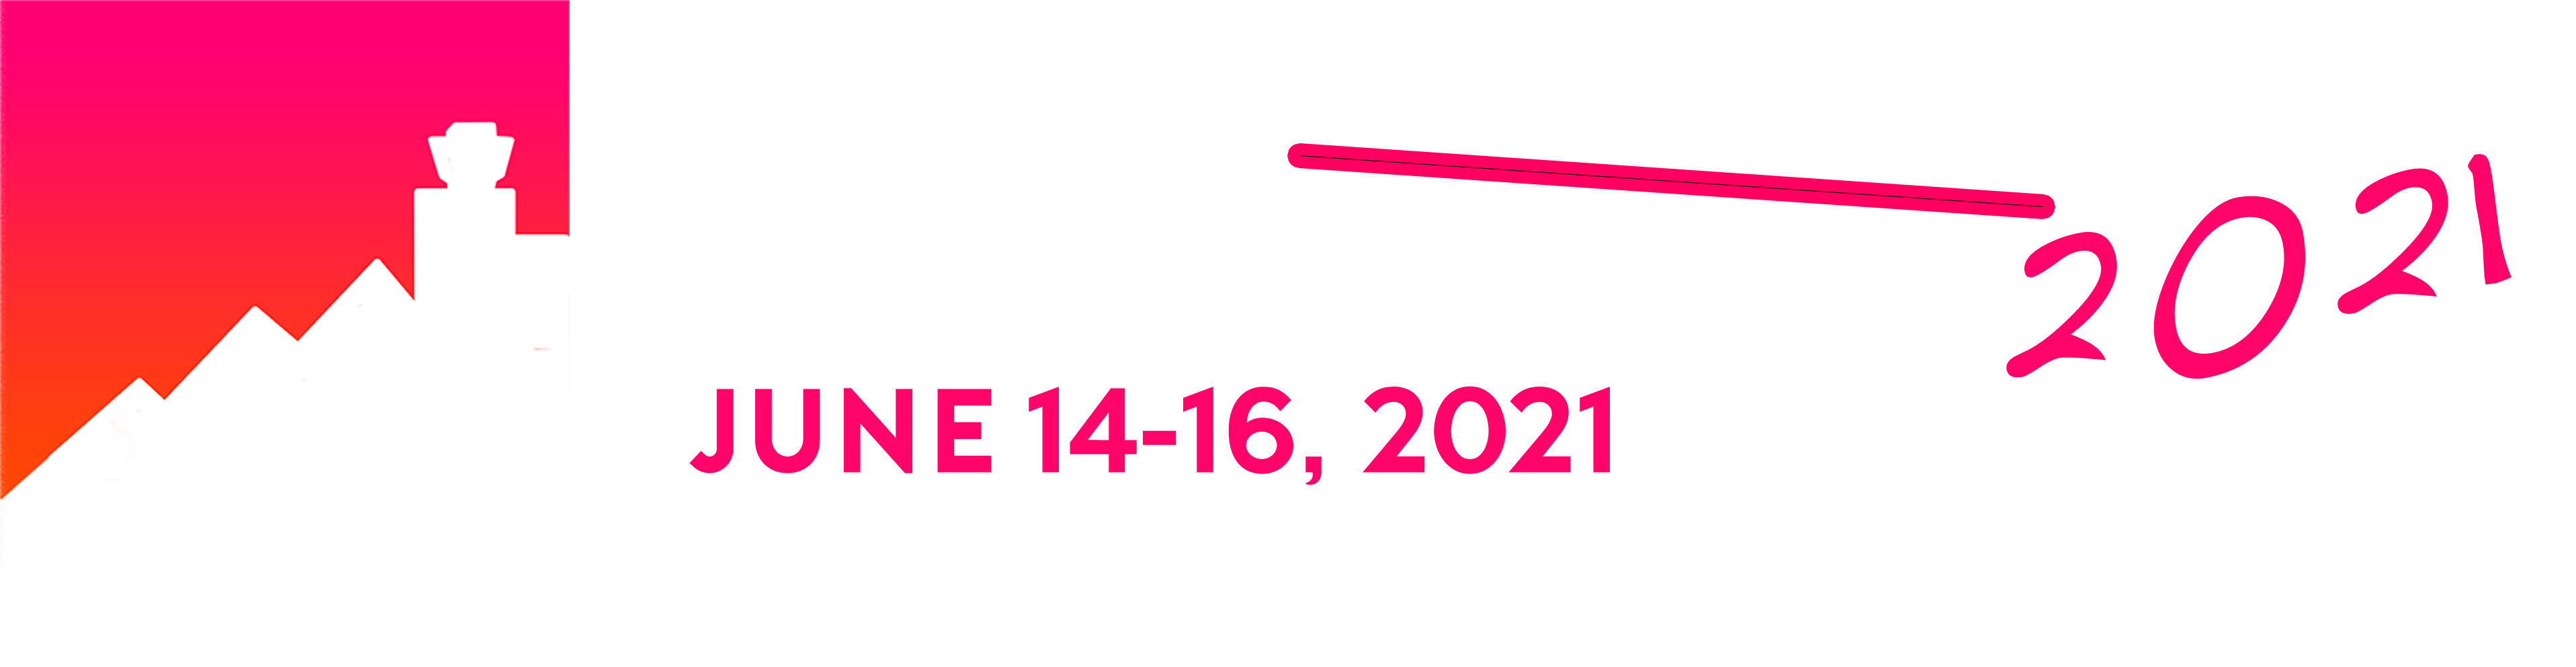 eSIM 2020